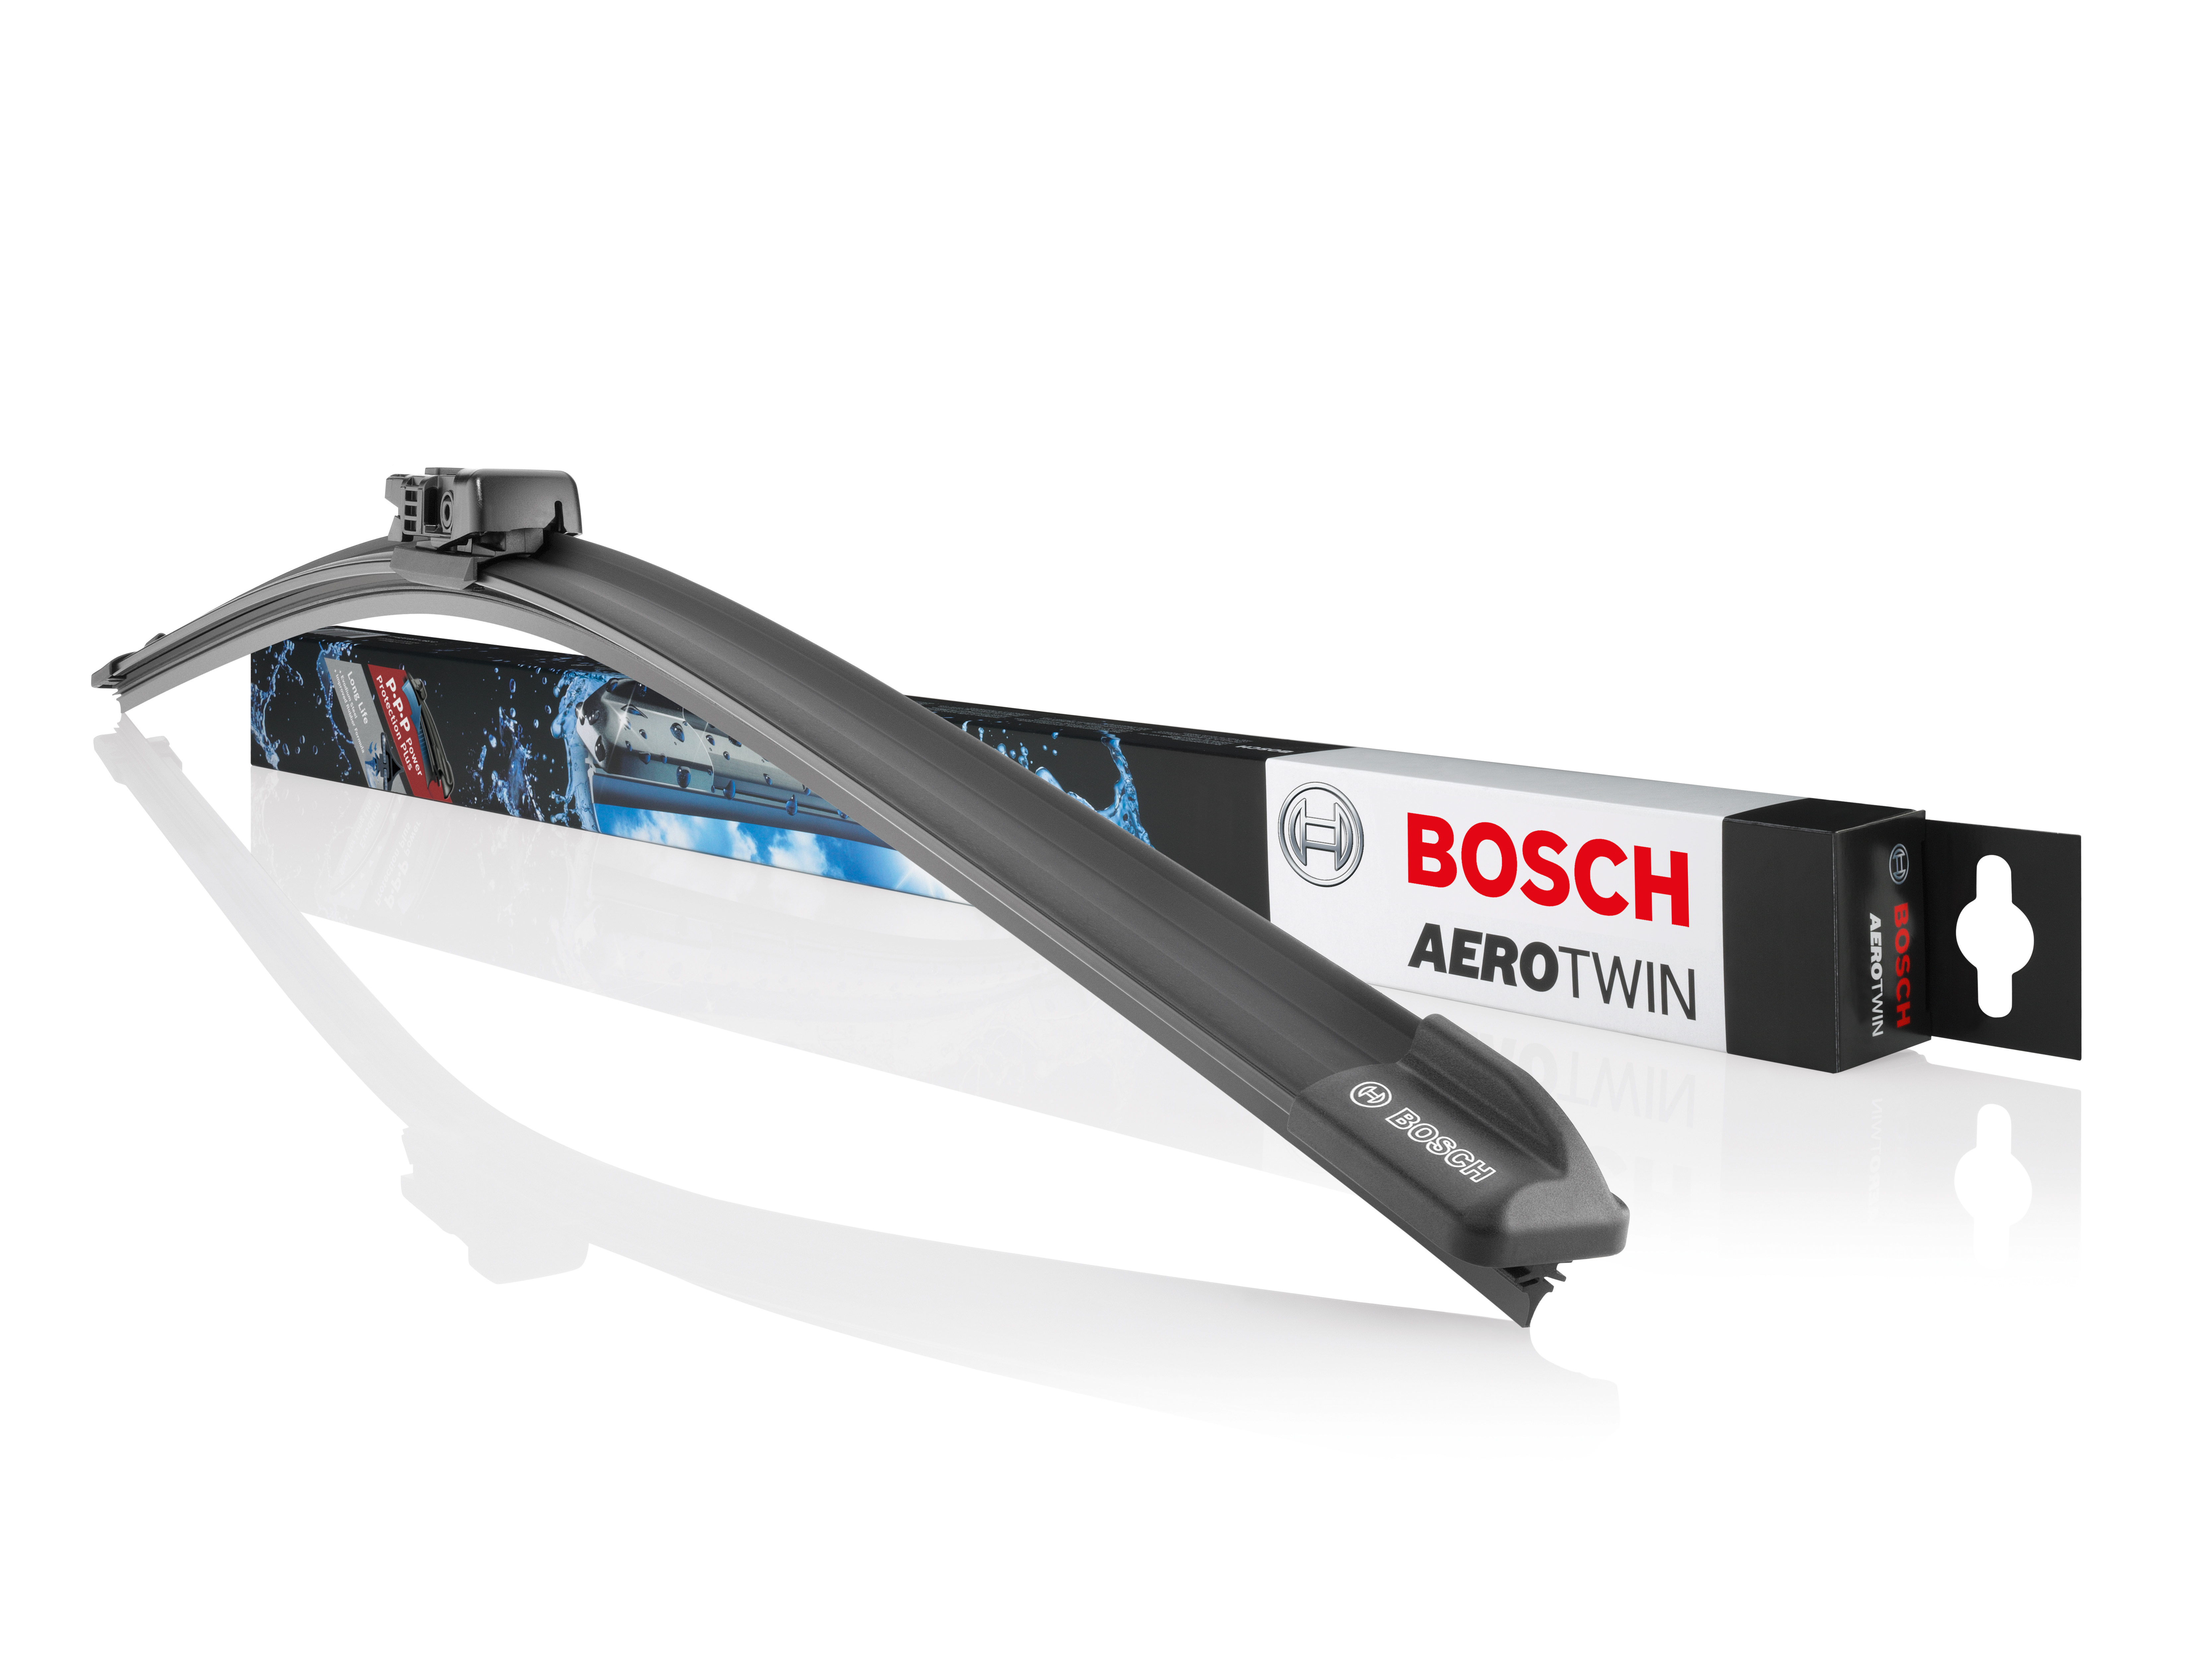 Tergicristalli Bosch Aerotwin con nuovo profilo della spazzola in gomma -  Bosch Pressportal